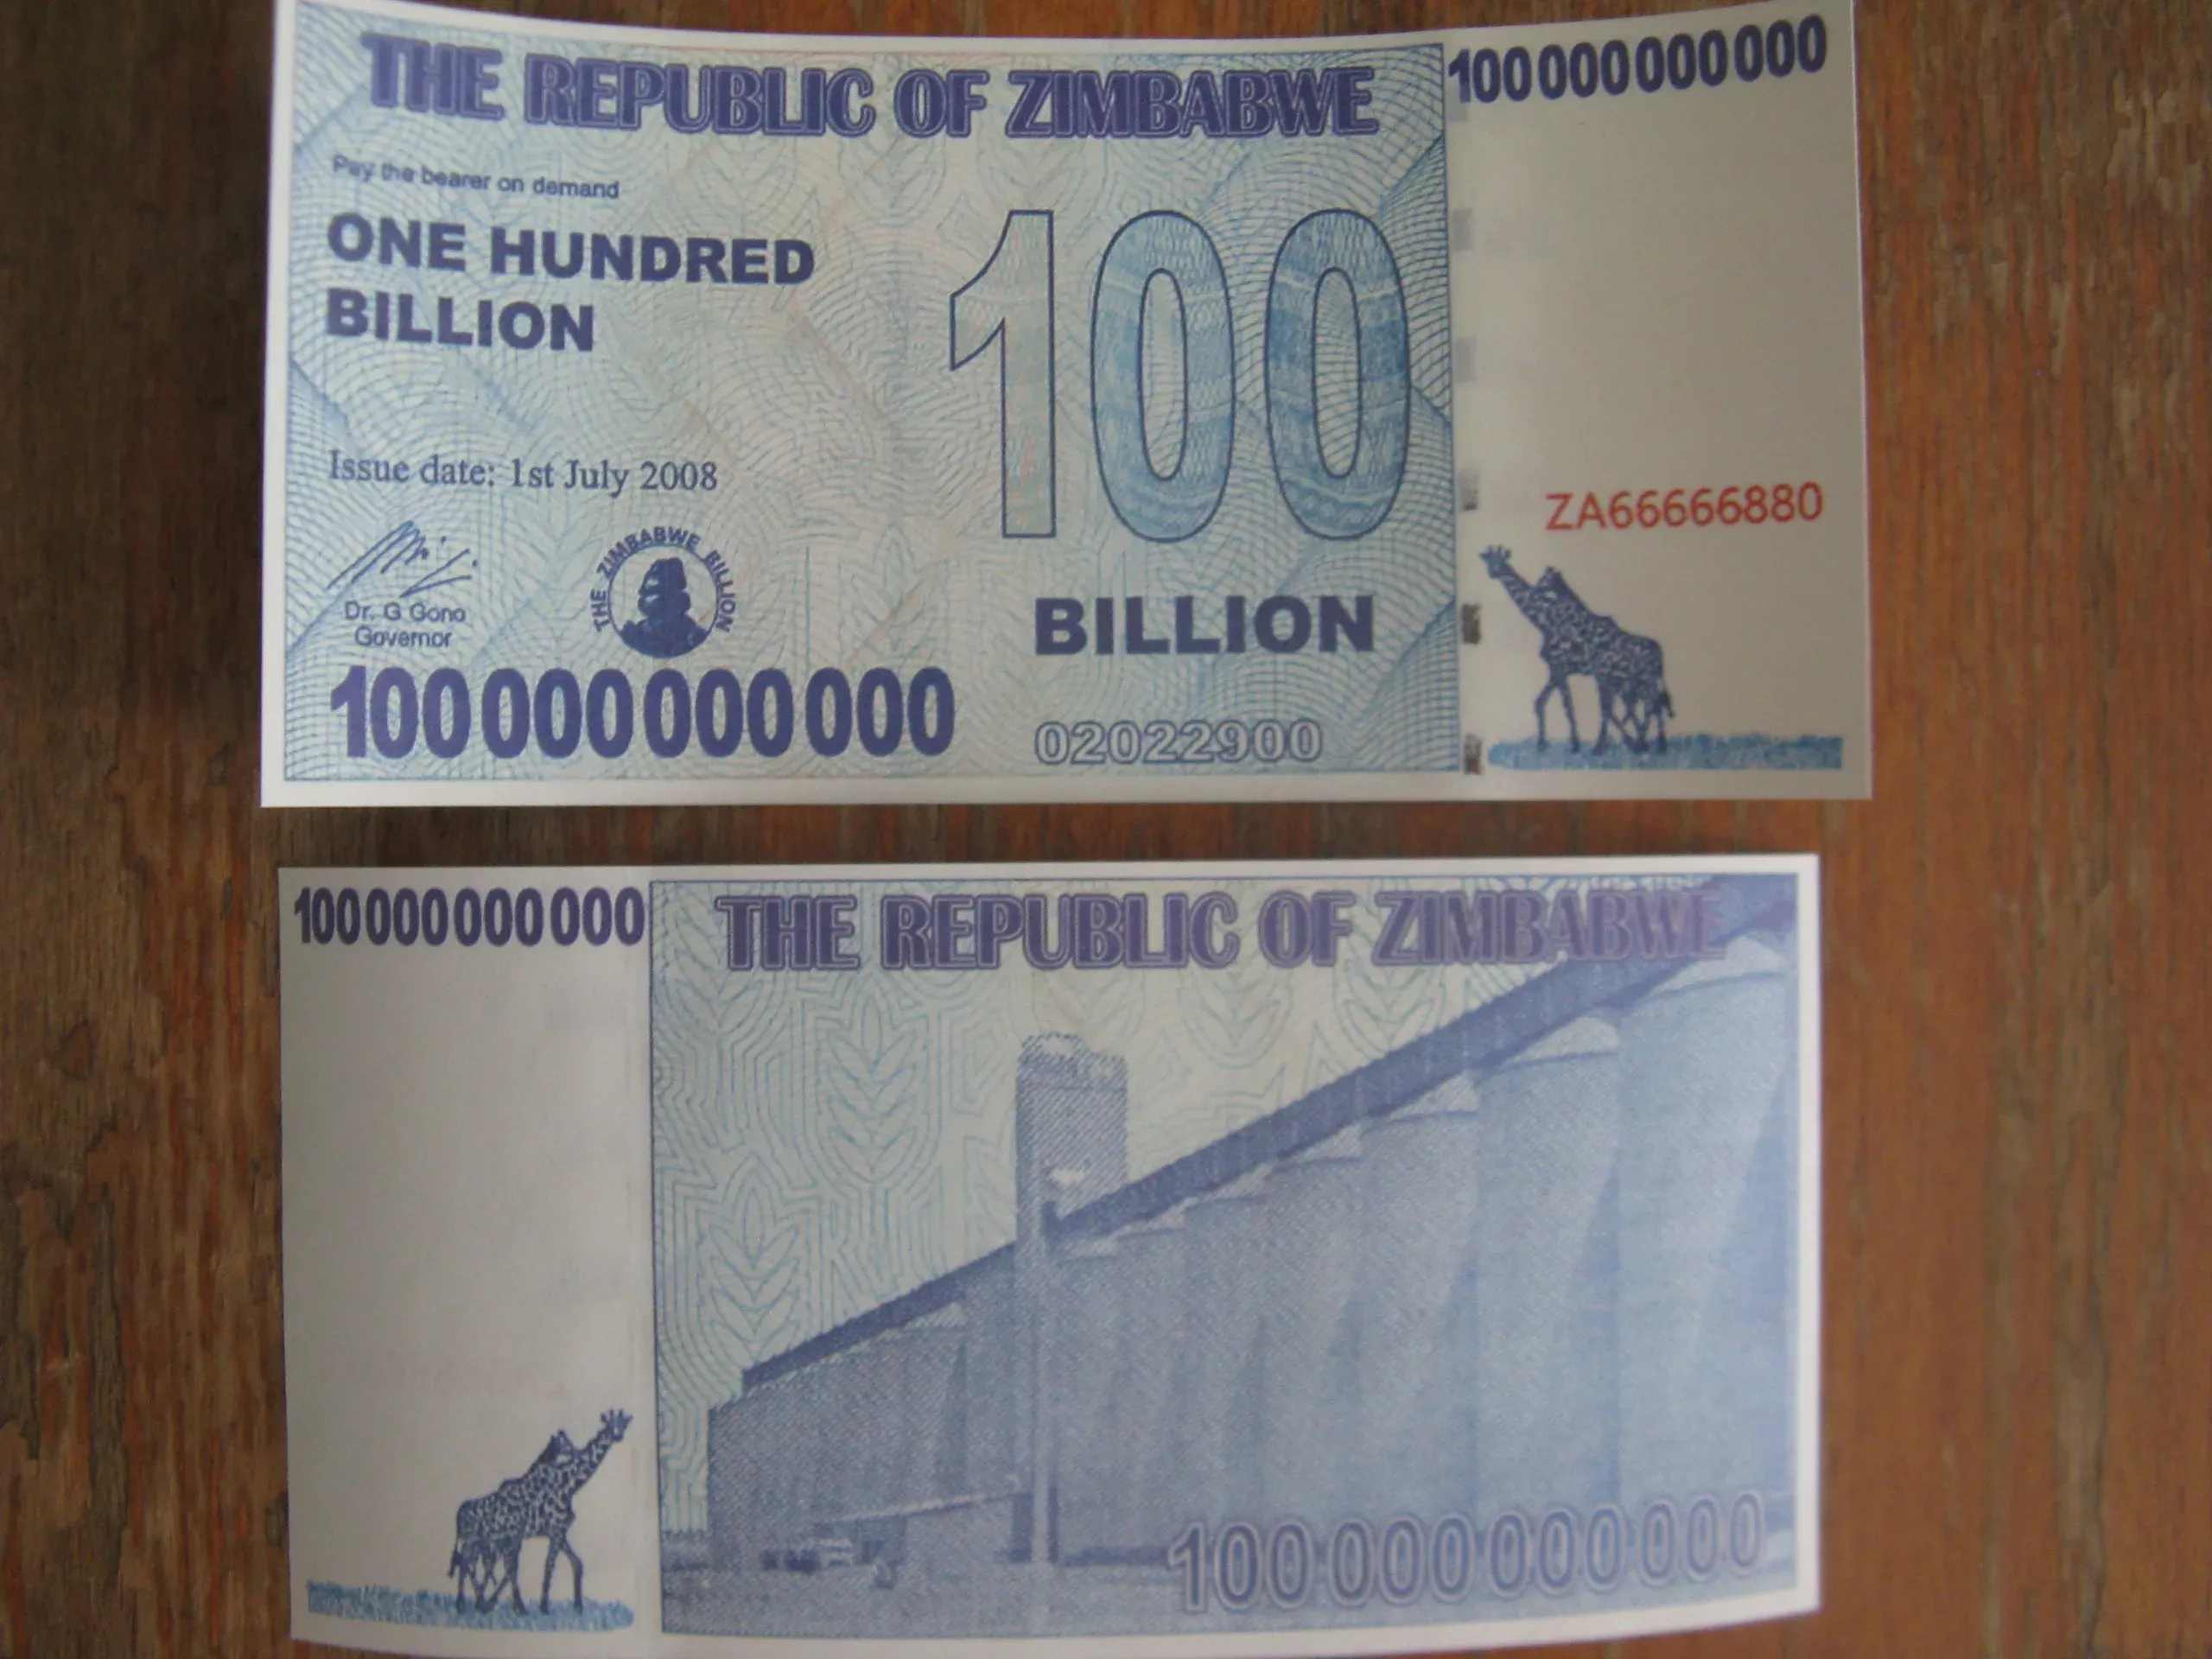 2008 долларов в рублях. 100 Миллиардная валюта Зимбабве. 100 Миллиардов Зимбабве. Зимбабве 100 миллиардов долларов 2008 год. 100 Триллионов зимбабвийских долларов.